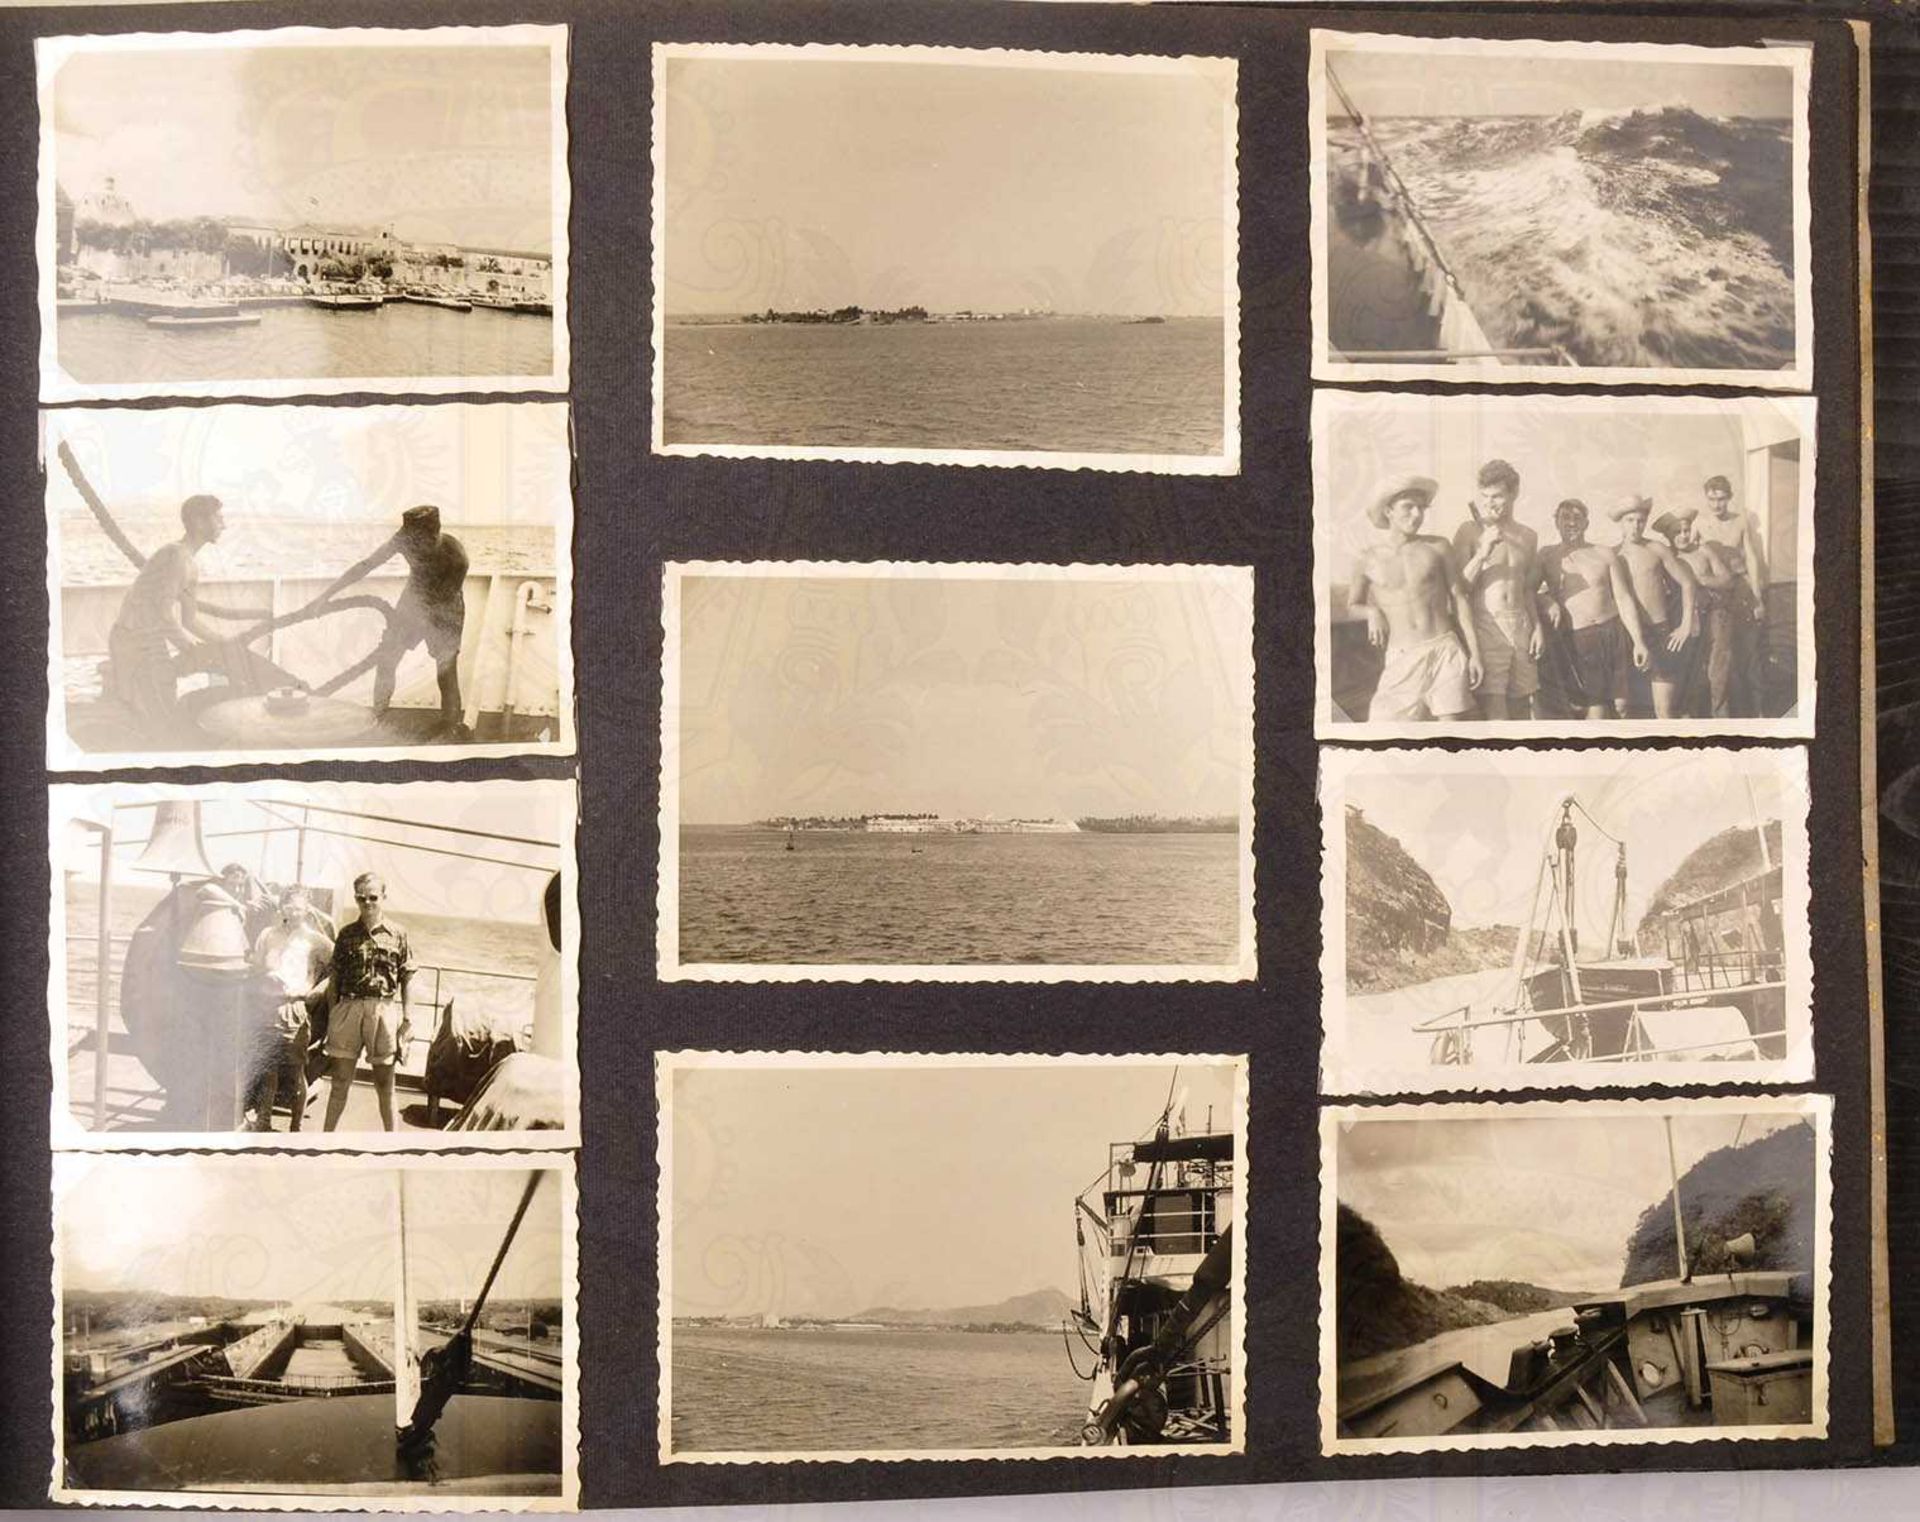 FOTOALBUM EINES BESATZUNGSMITGLIEDS, des deutschen Frachtschiffes Libanon, über 170 Aufn., um - Bild 4 aus 5